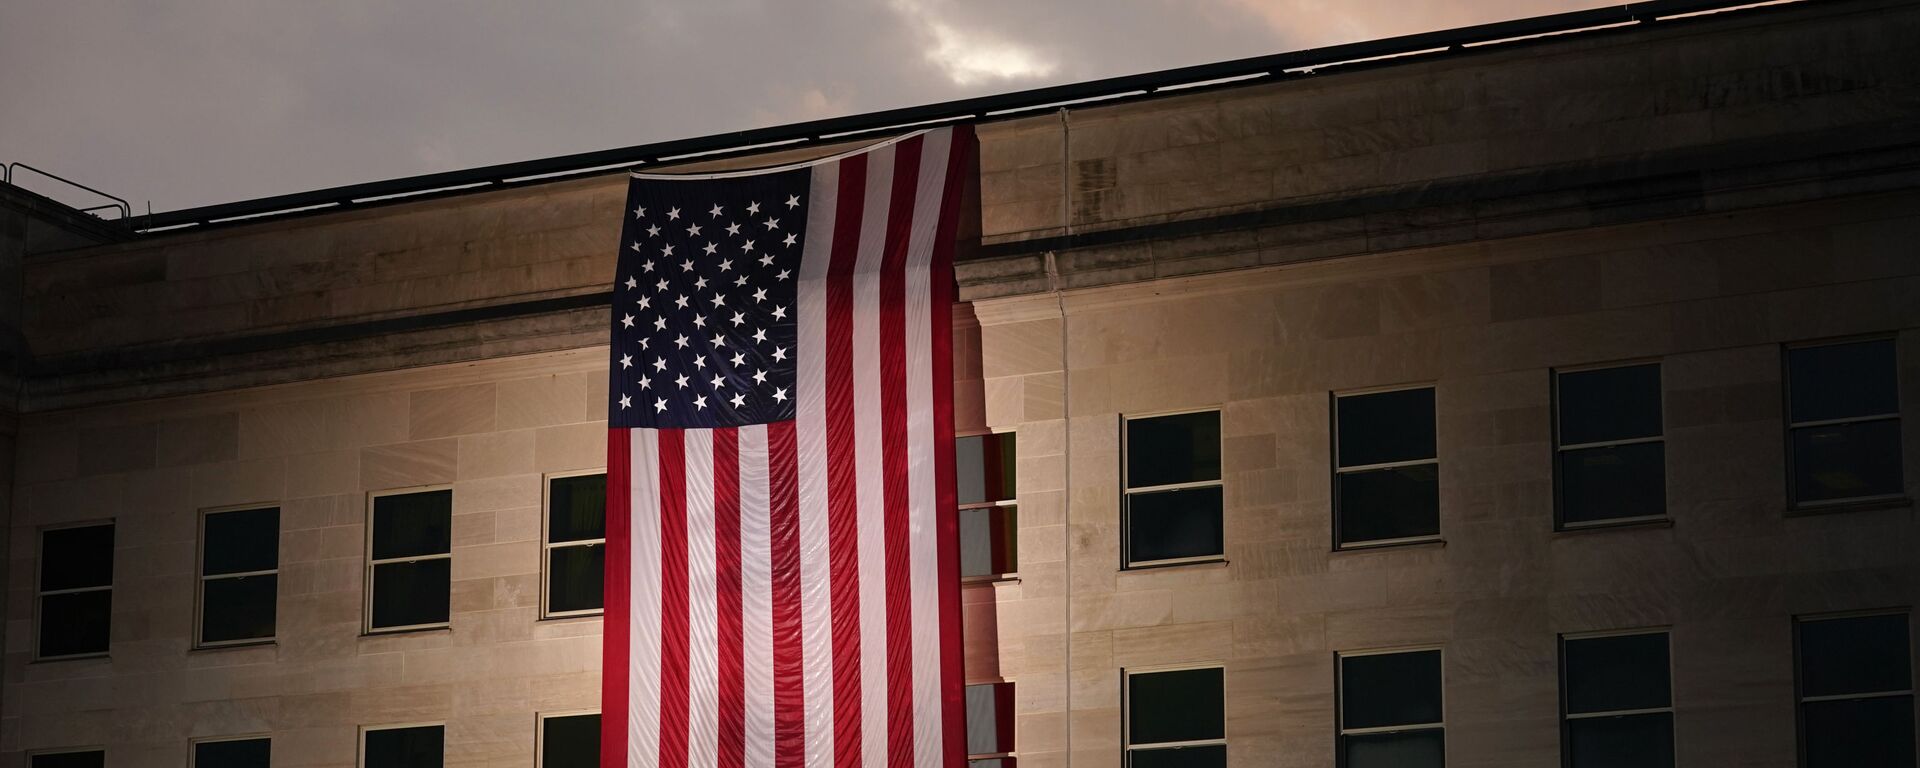 Здание Пентагона с флагом США в память о жертвах трагедии 11 сентября - Sputnik Србија, 1920, 25.03.2022